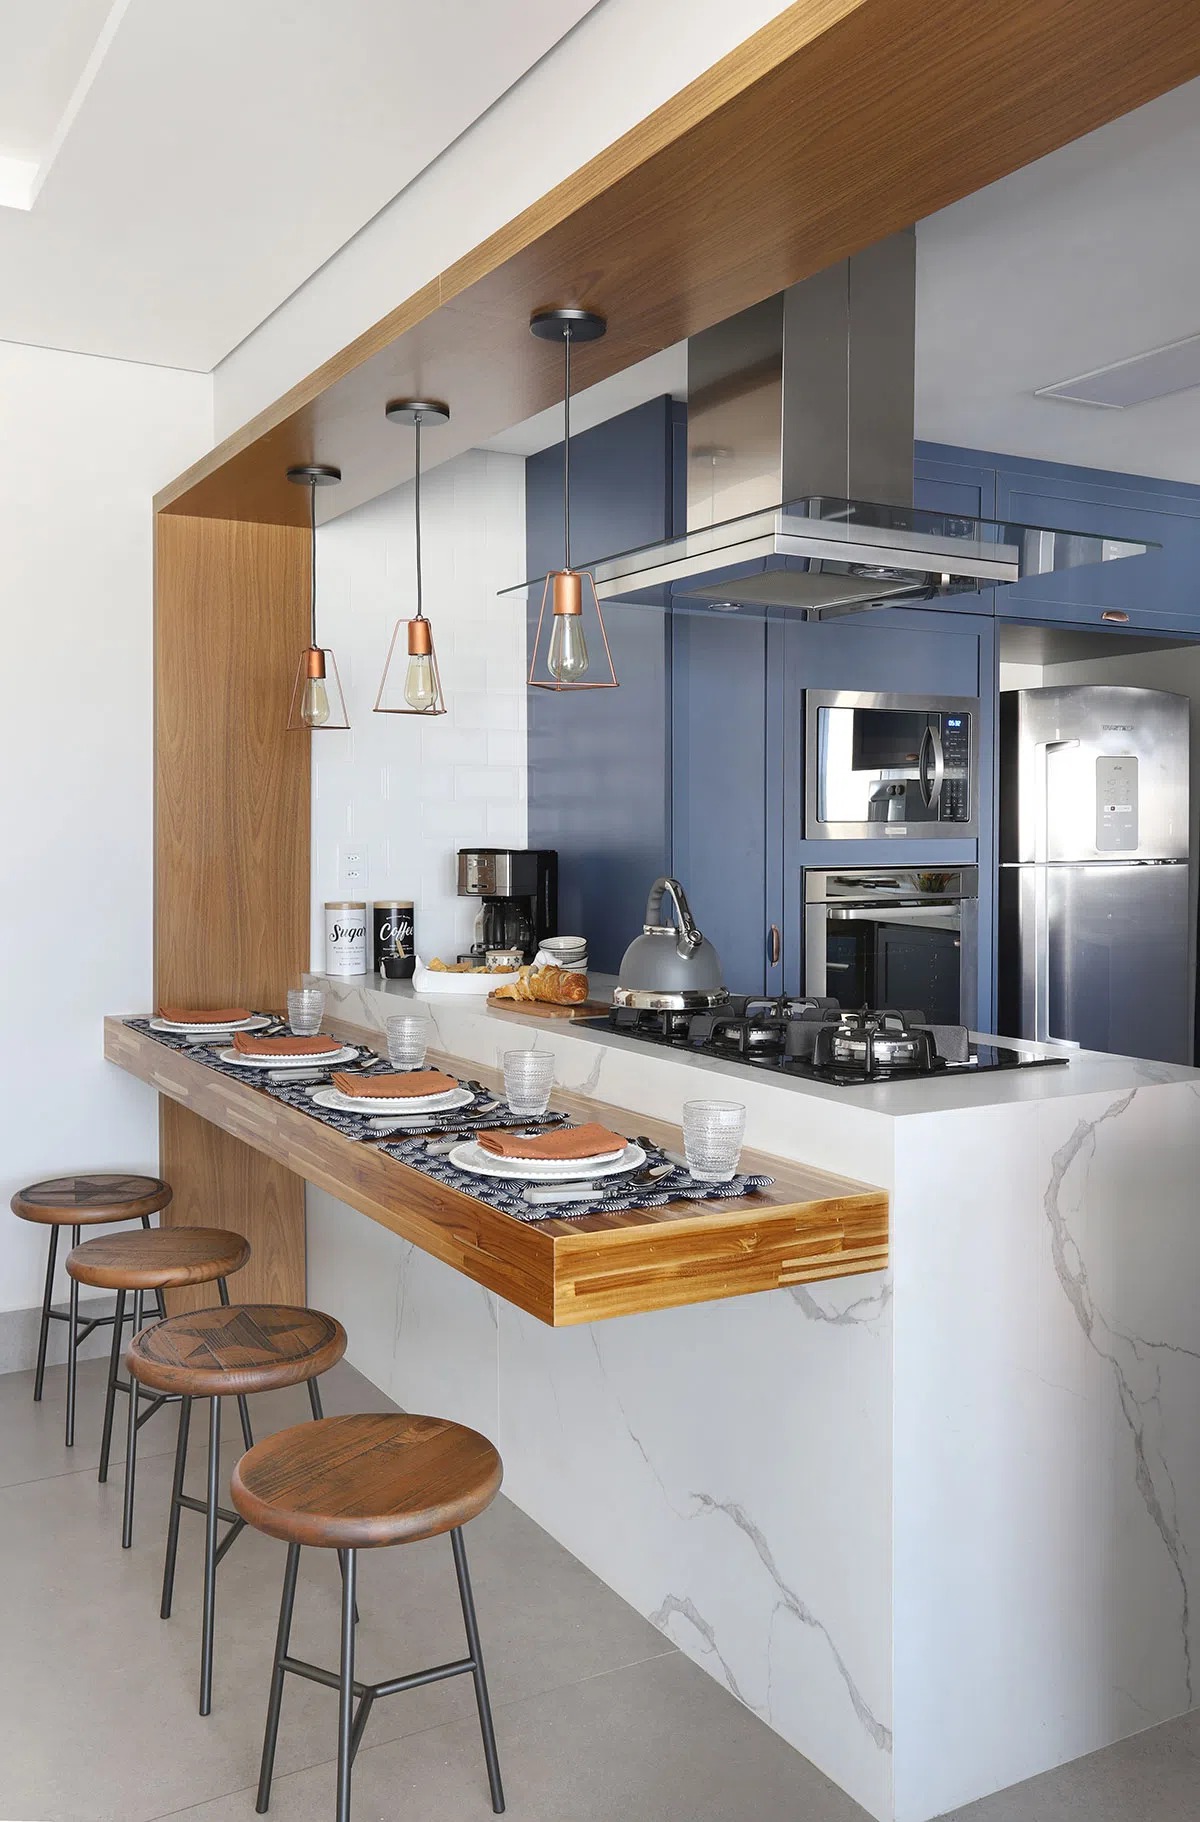 Thiết kế nội thất phòng bếp chung cư đơn giản tự nhiên với màu xanh dương